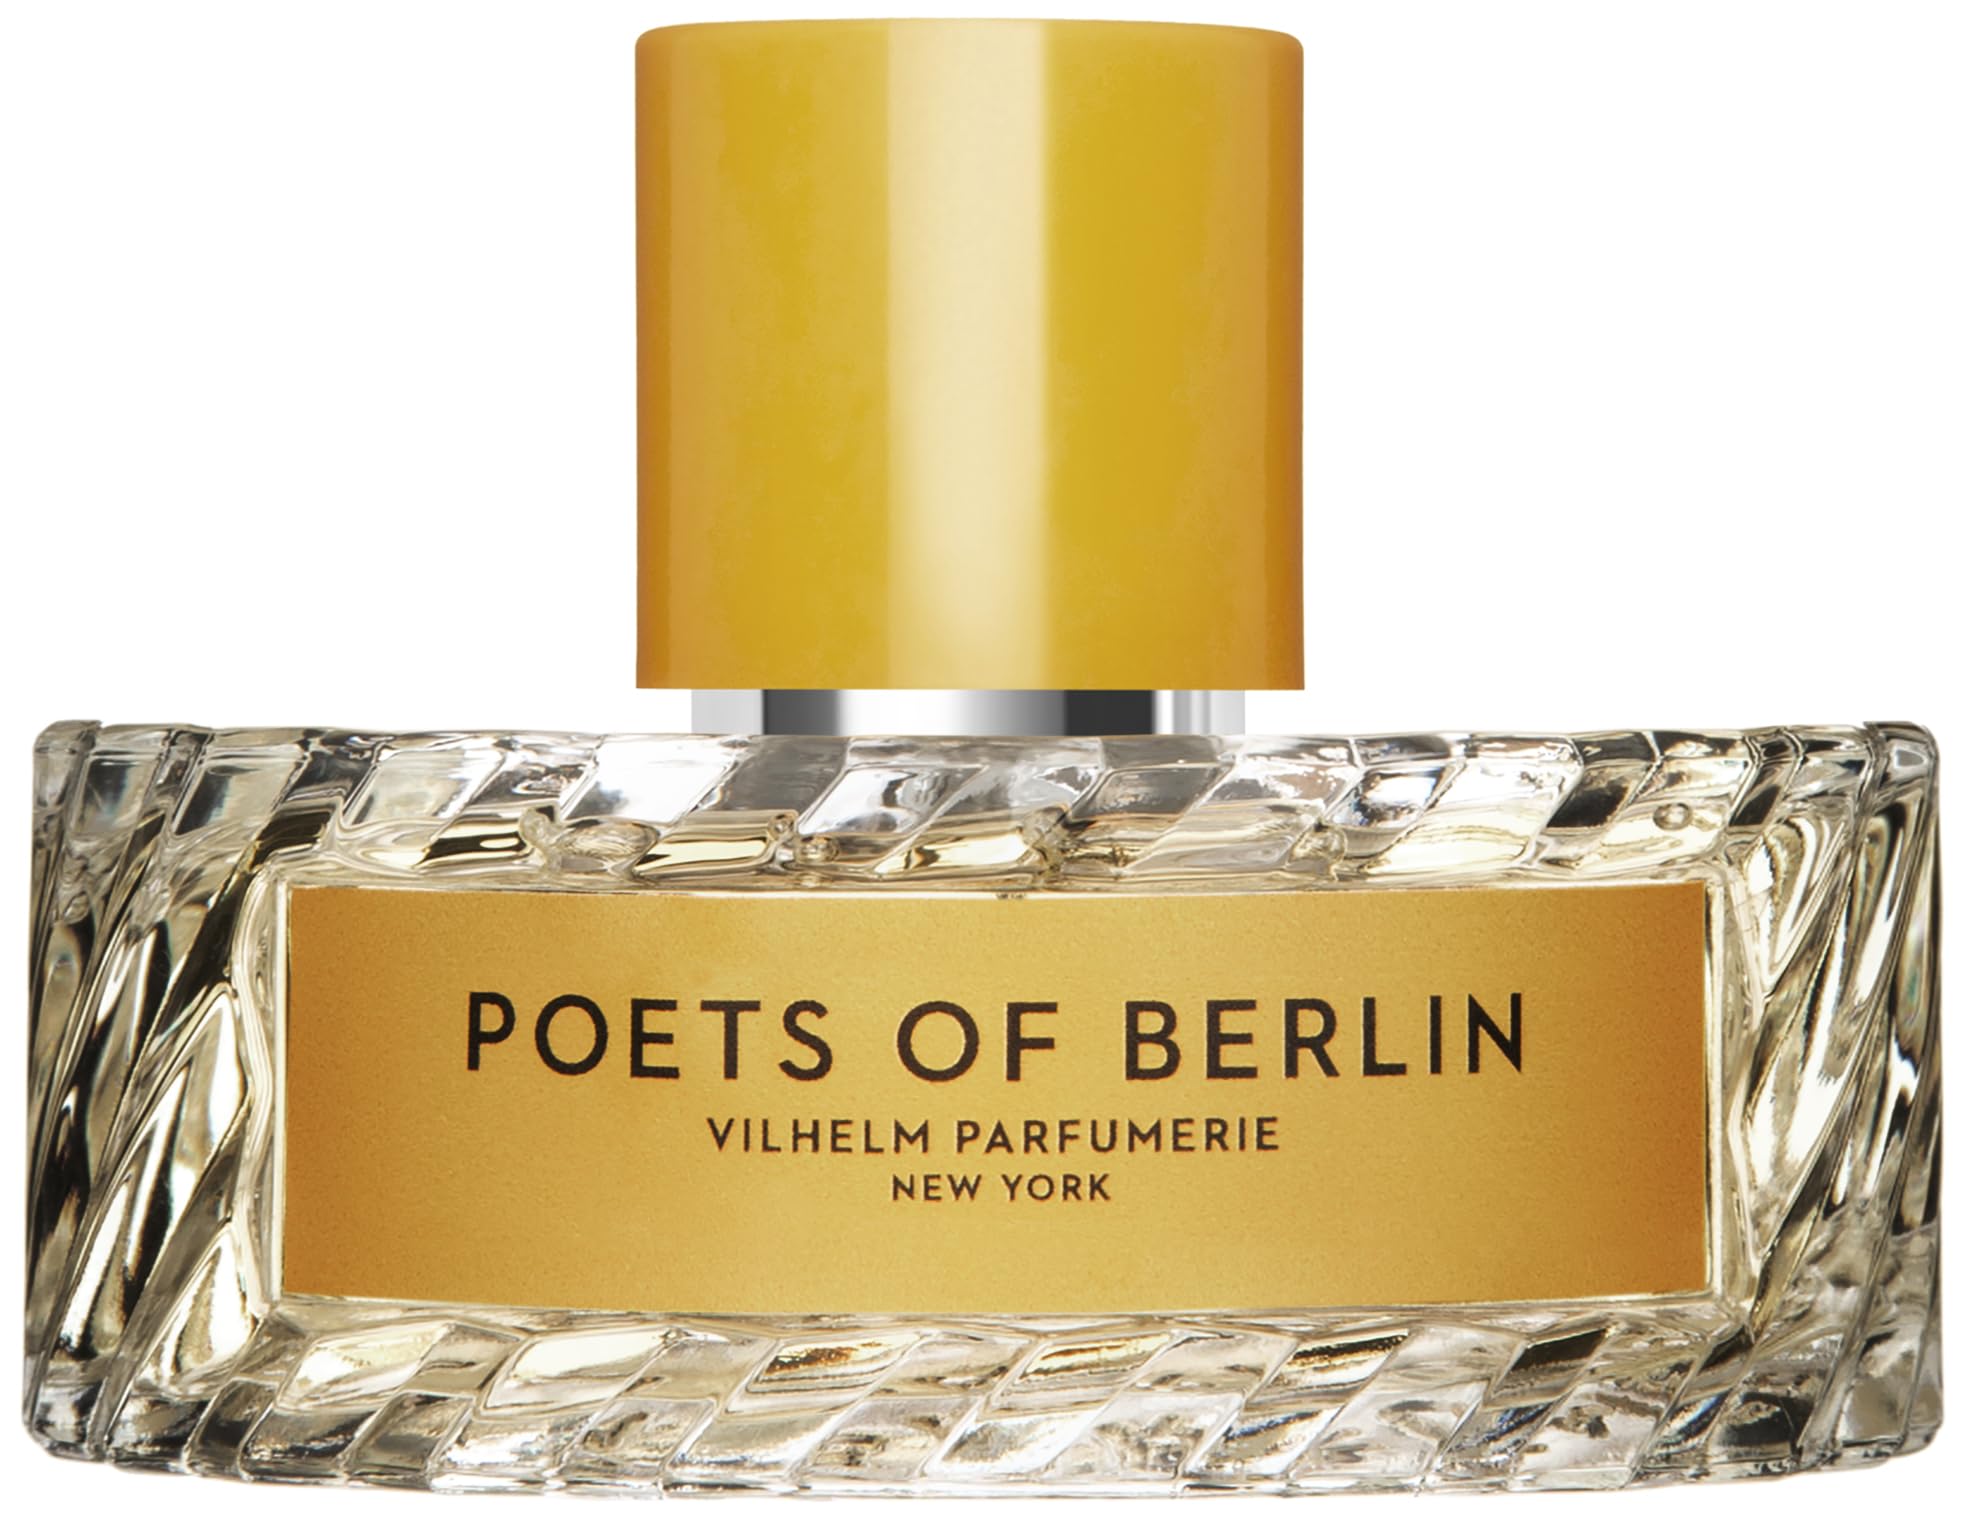 Vilhelm Parfumerie, Poets of Berlin